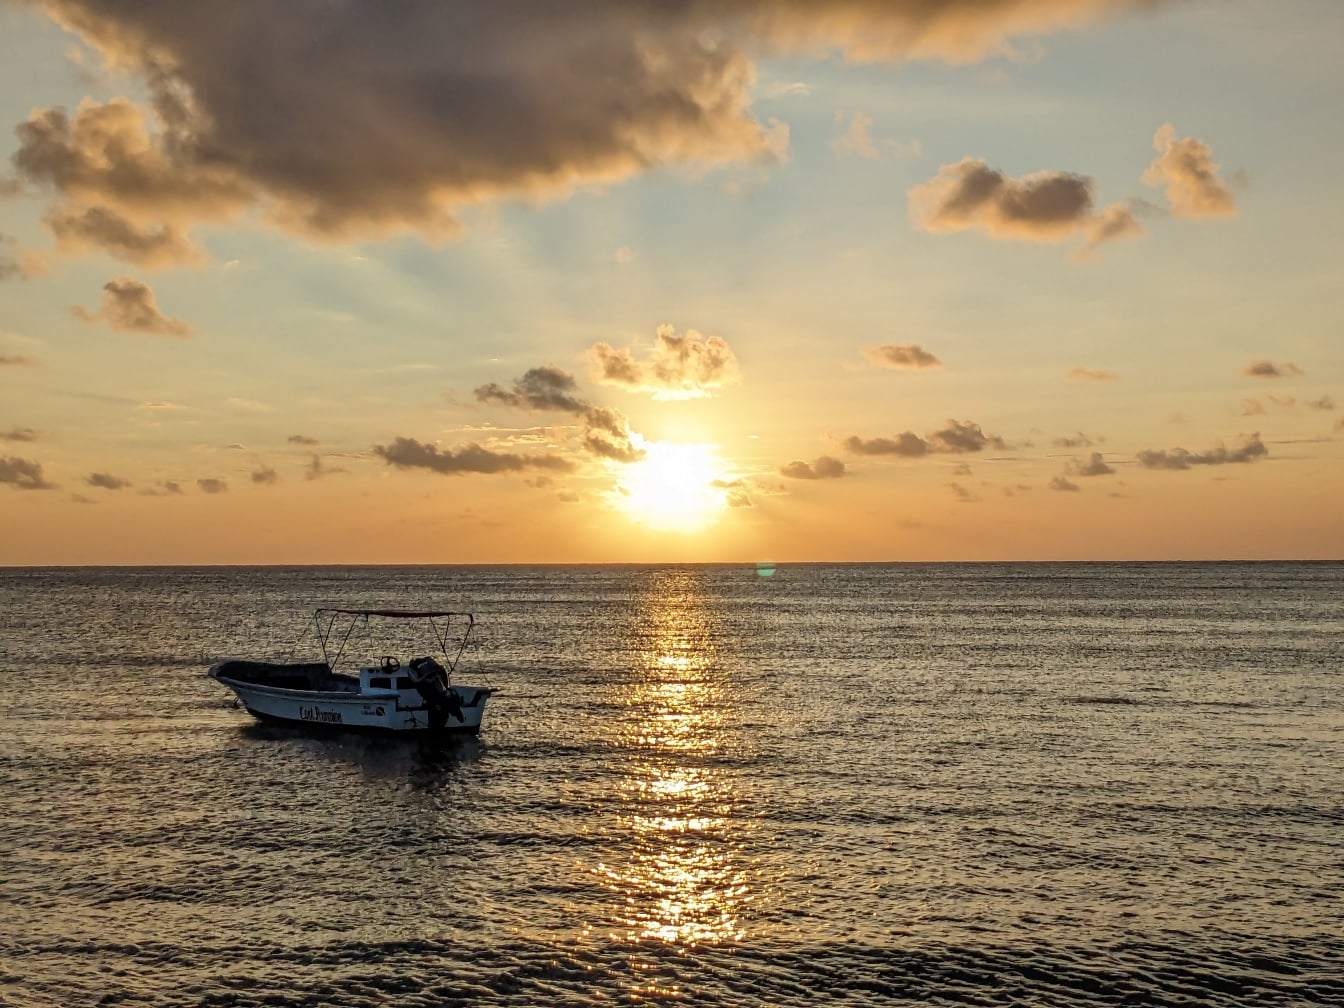 Pequeño barco en el mar con brillantes rayos de sol reflejados en el horizonte del mar al amanecer